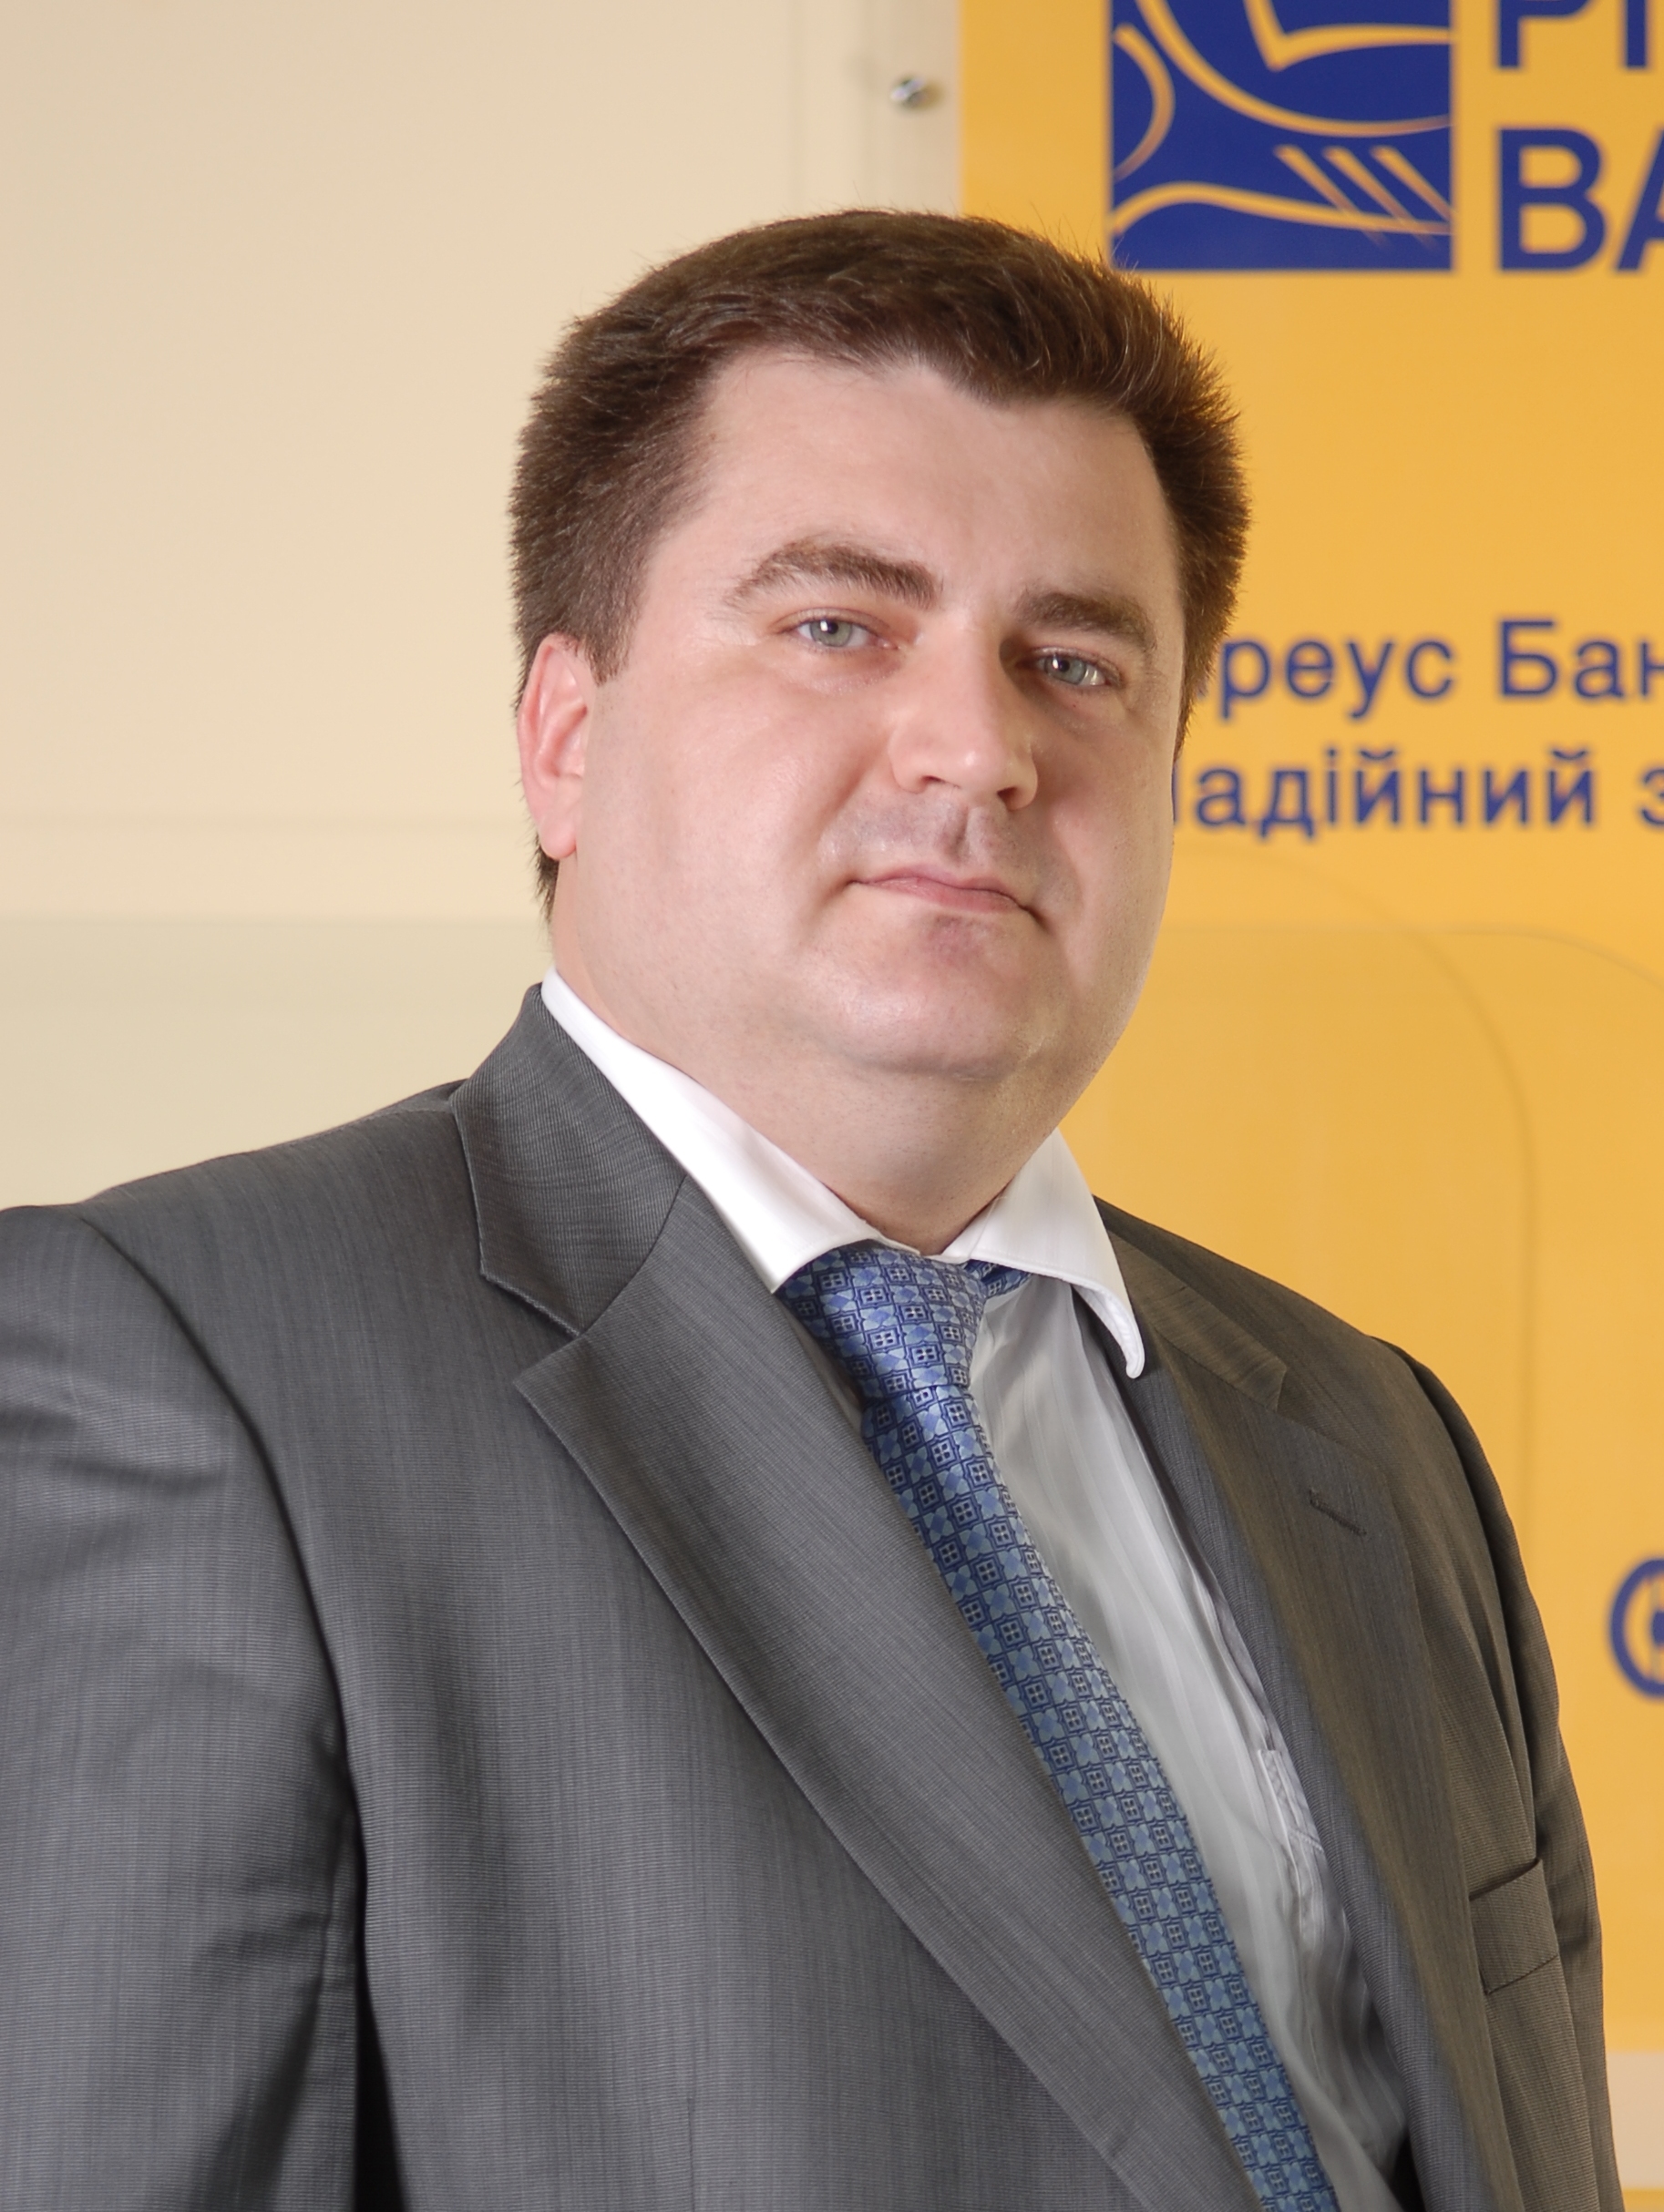 Дмитро Мусієнко, член правління, директор департаменту мережі філій Піреус Банку в Україні